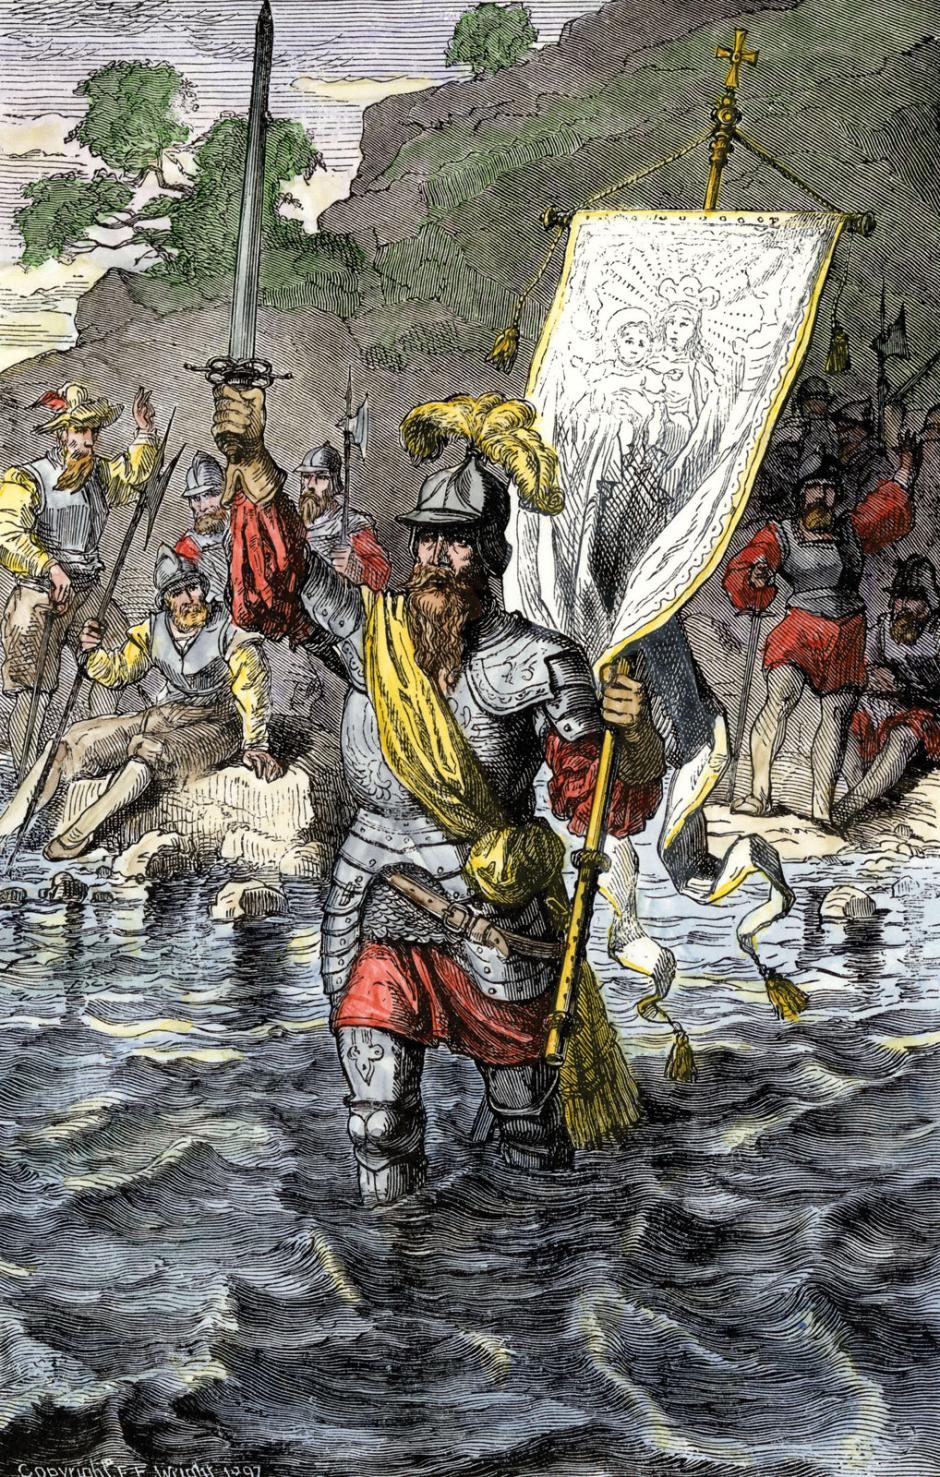 Vasco Núñez de Balboa reclamando el océano Pacífico para España en 1513 junto a sus soldados